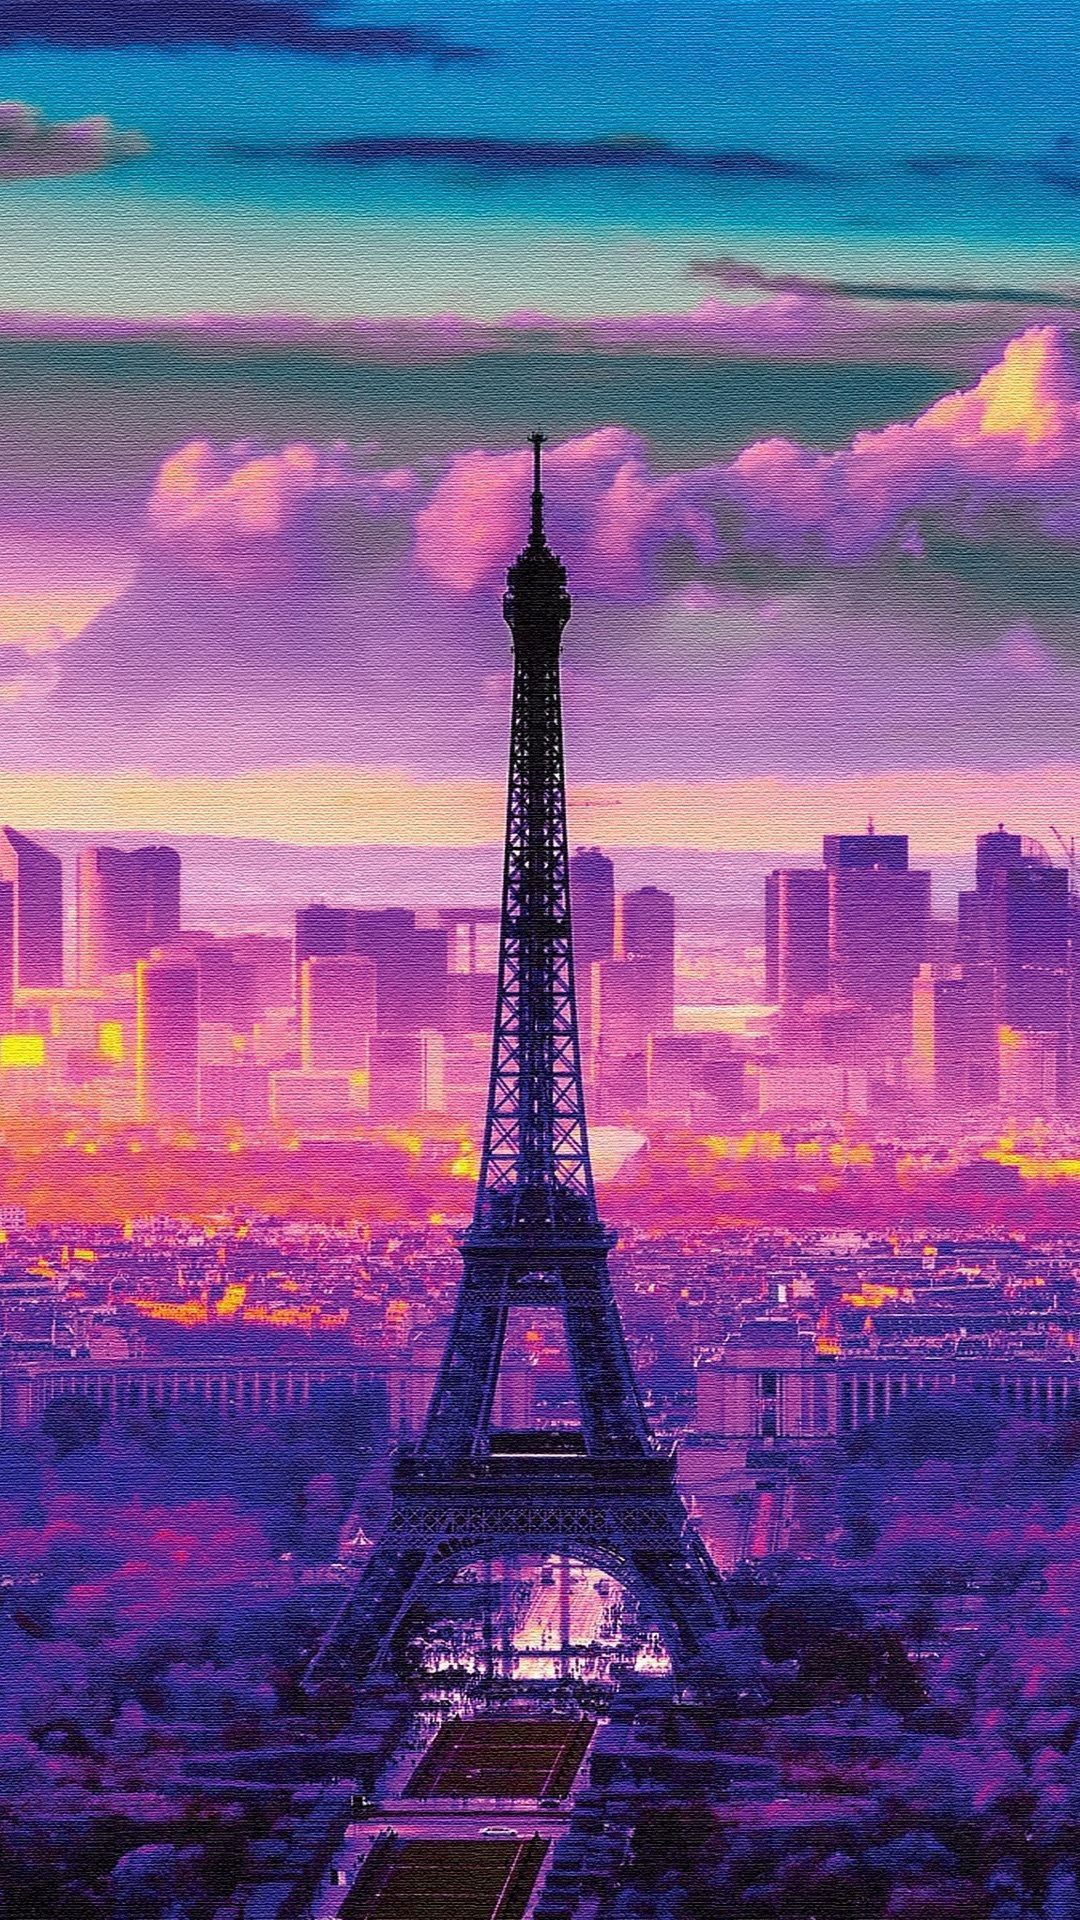 1080x1920 Pink Paris Wallpapers Top Free Pink Paris Backgrounds